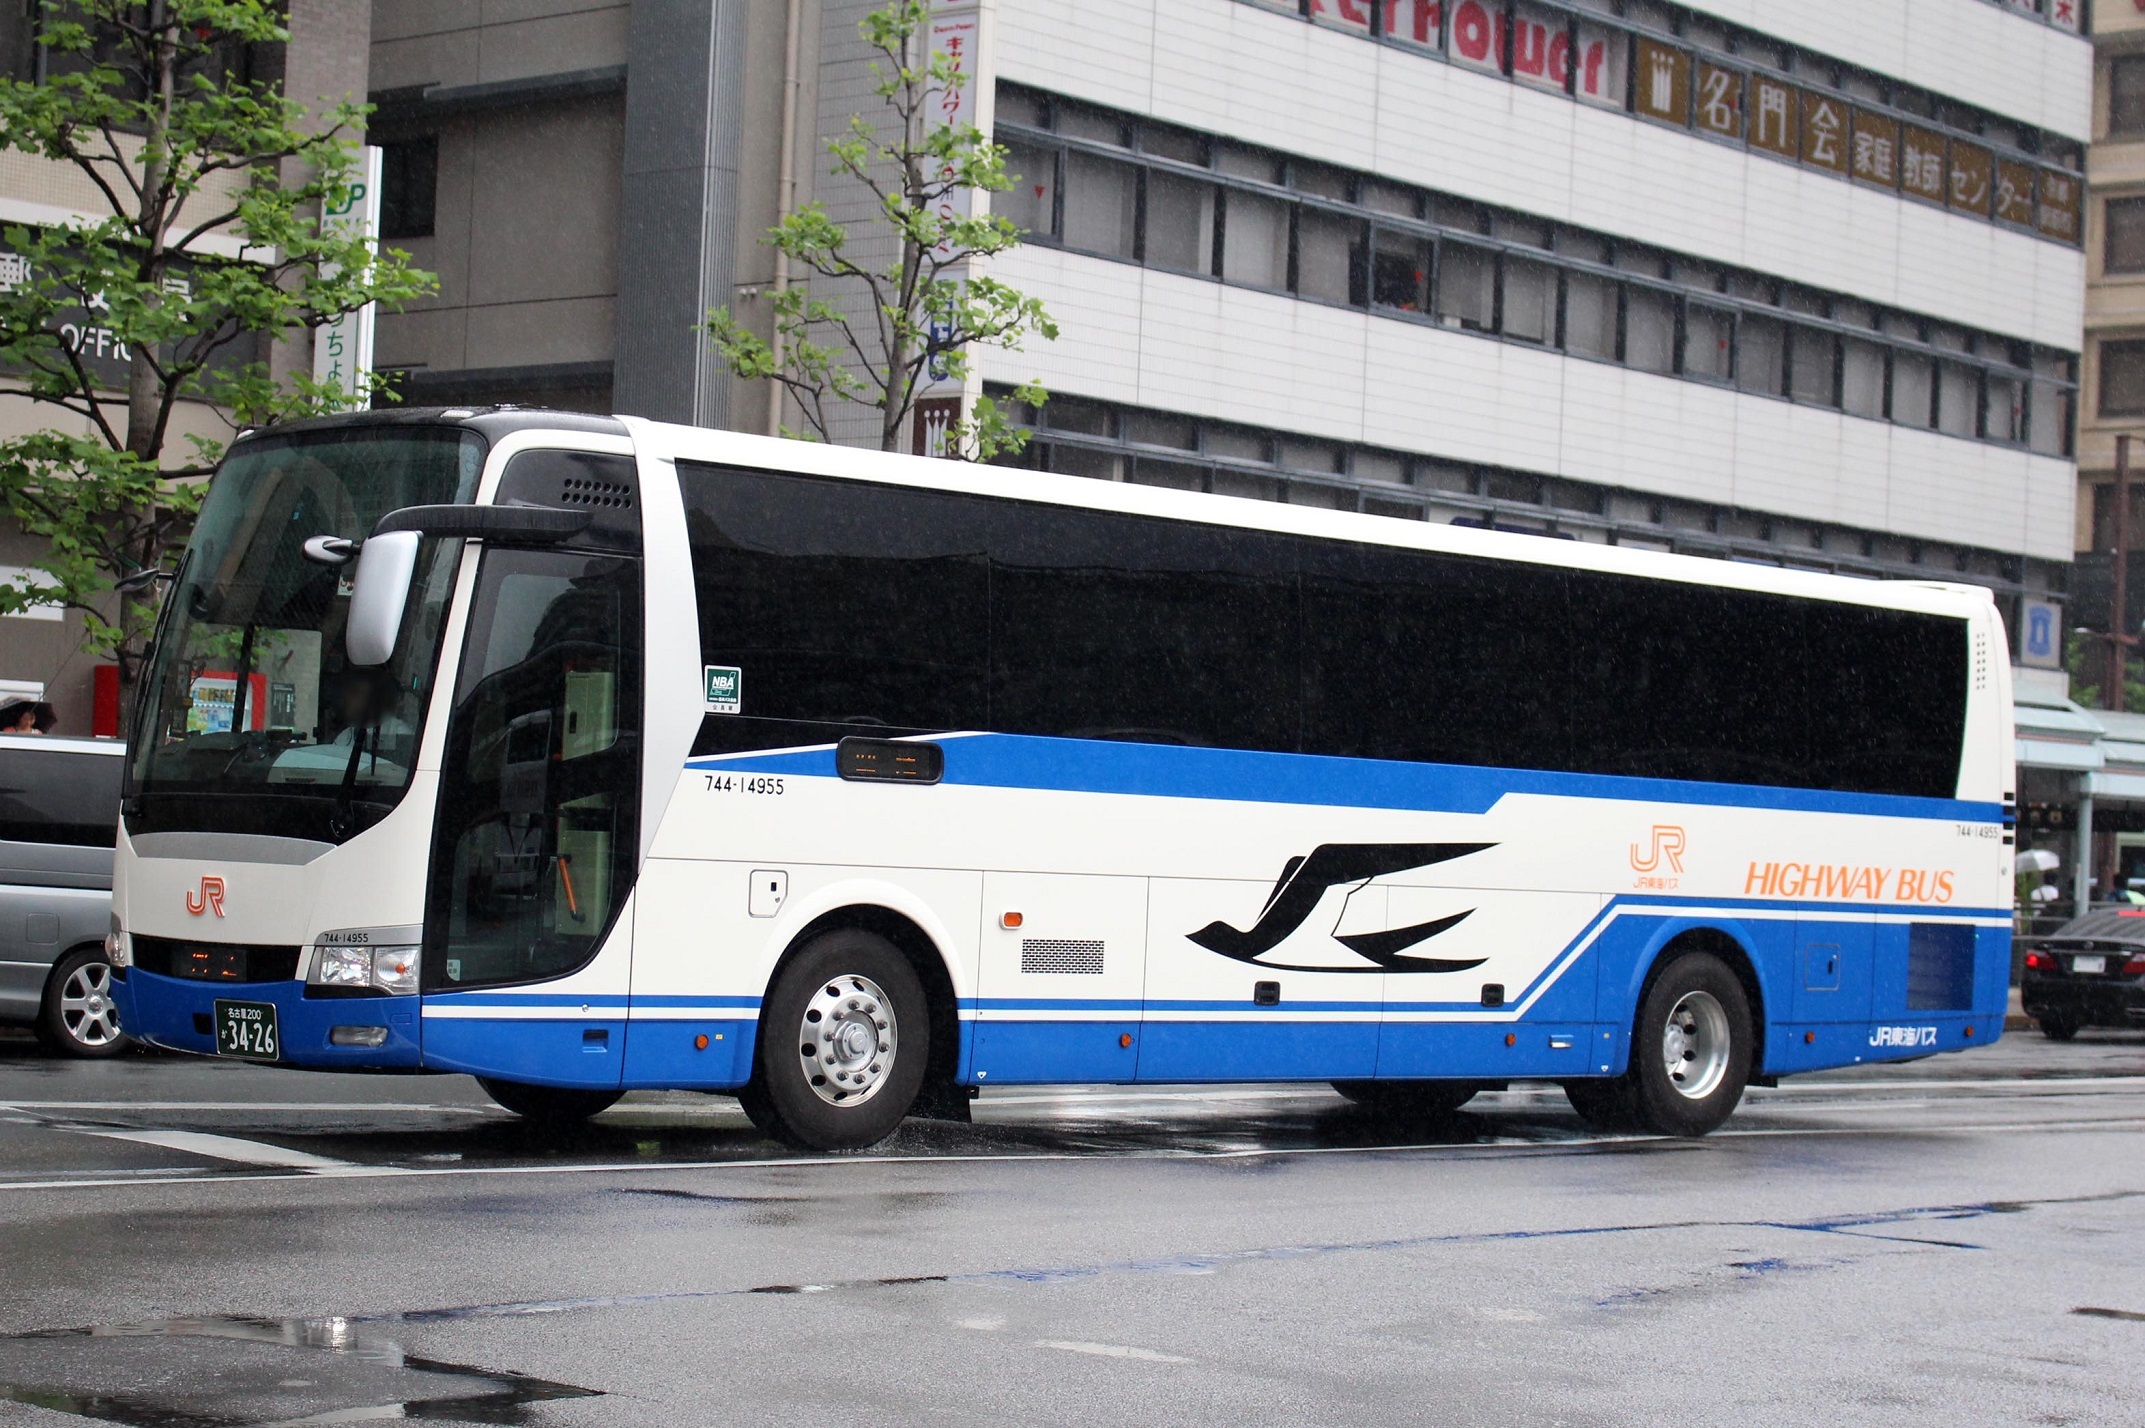 JR東海バス 744-14955